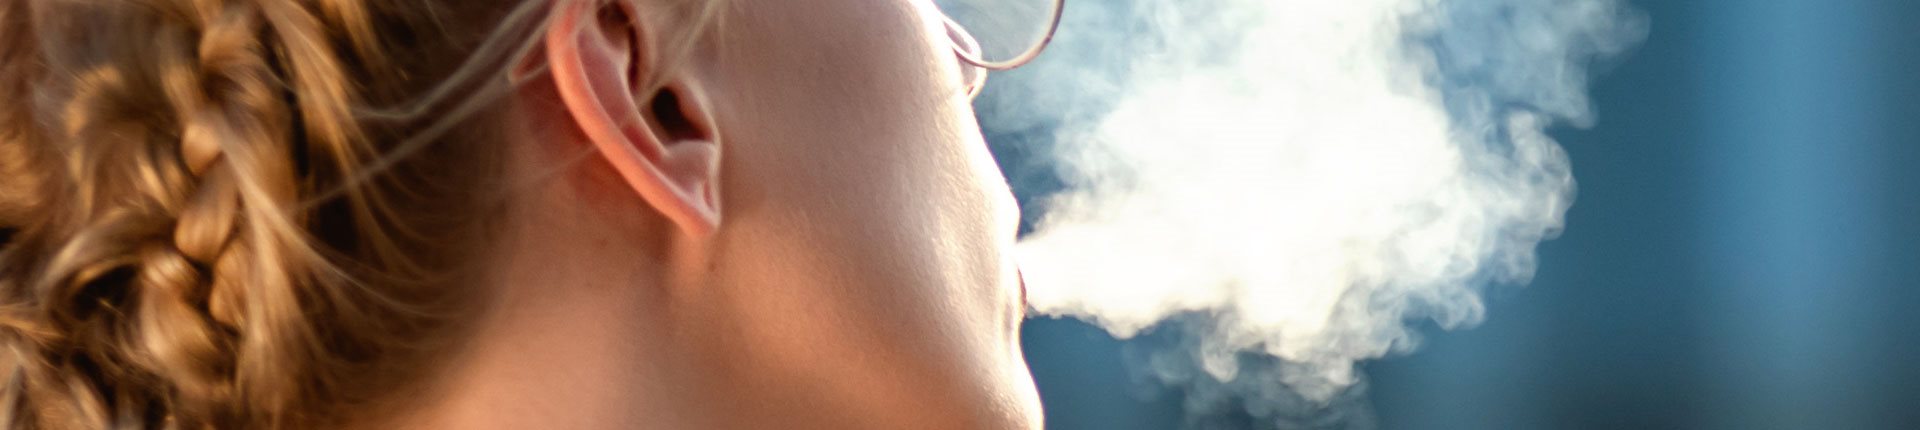 Czy E-papierosy zwiększają ryzyko nagłej śmierci?